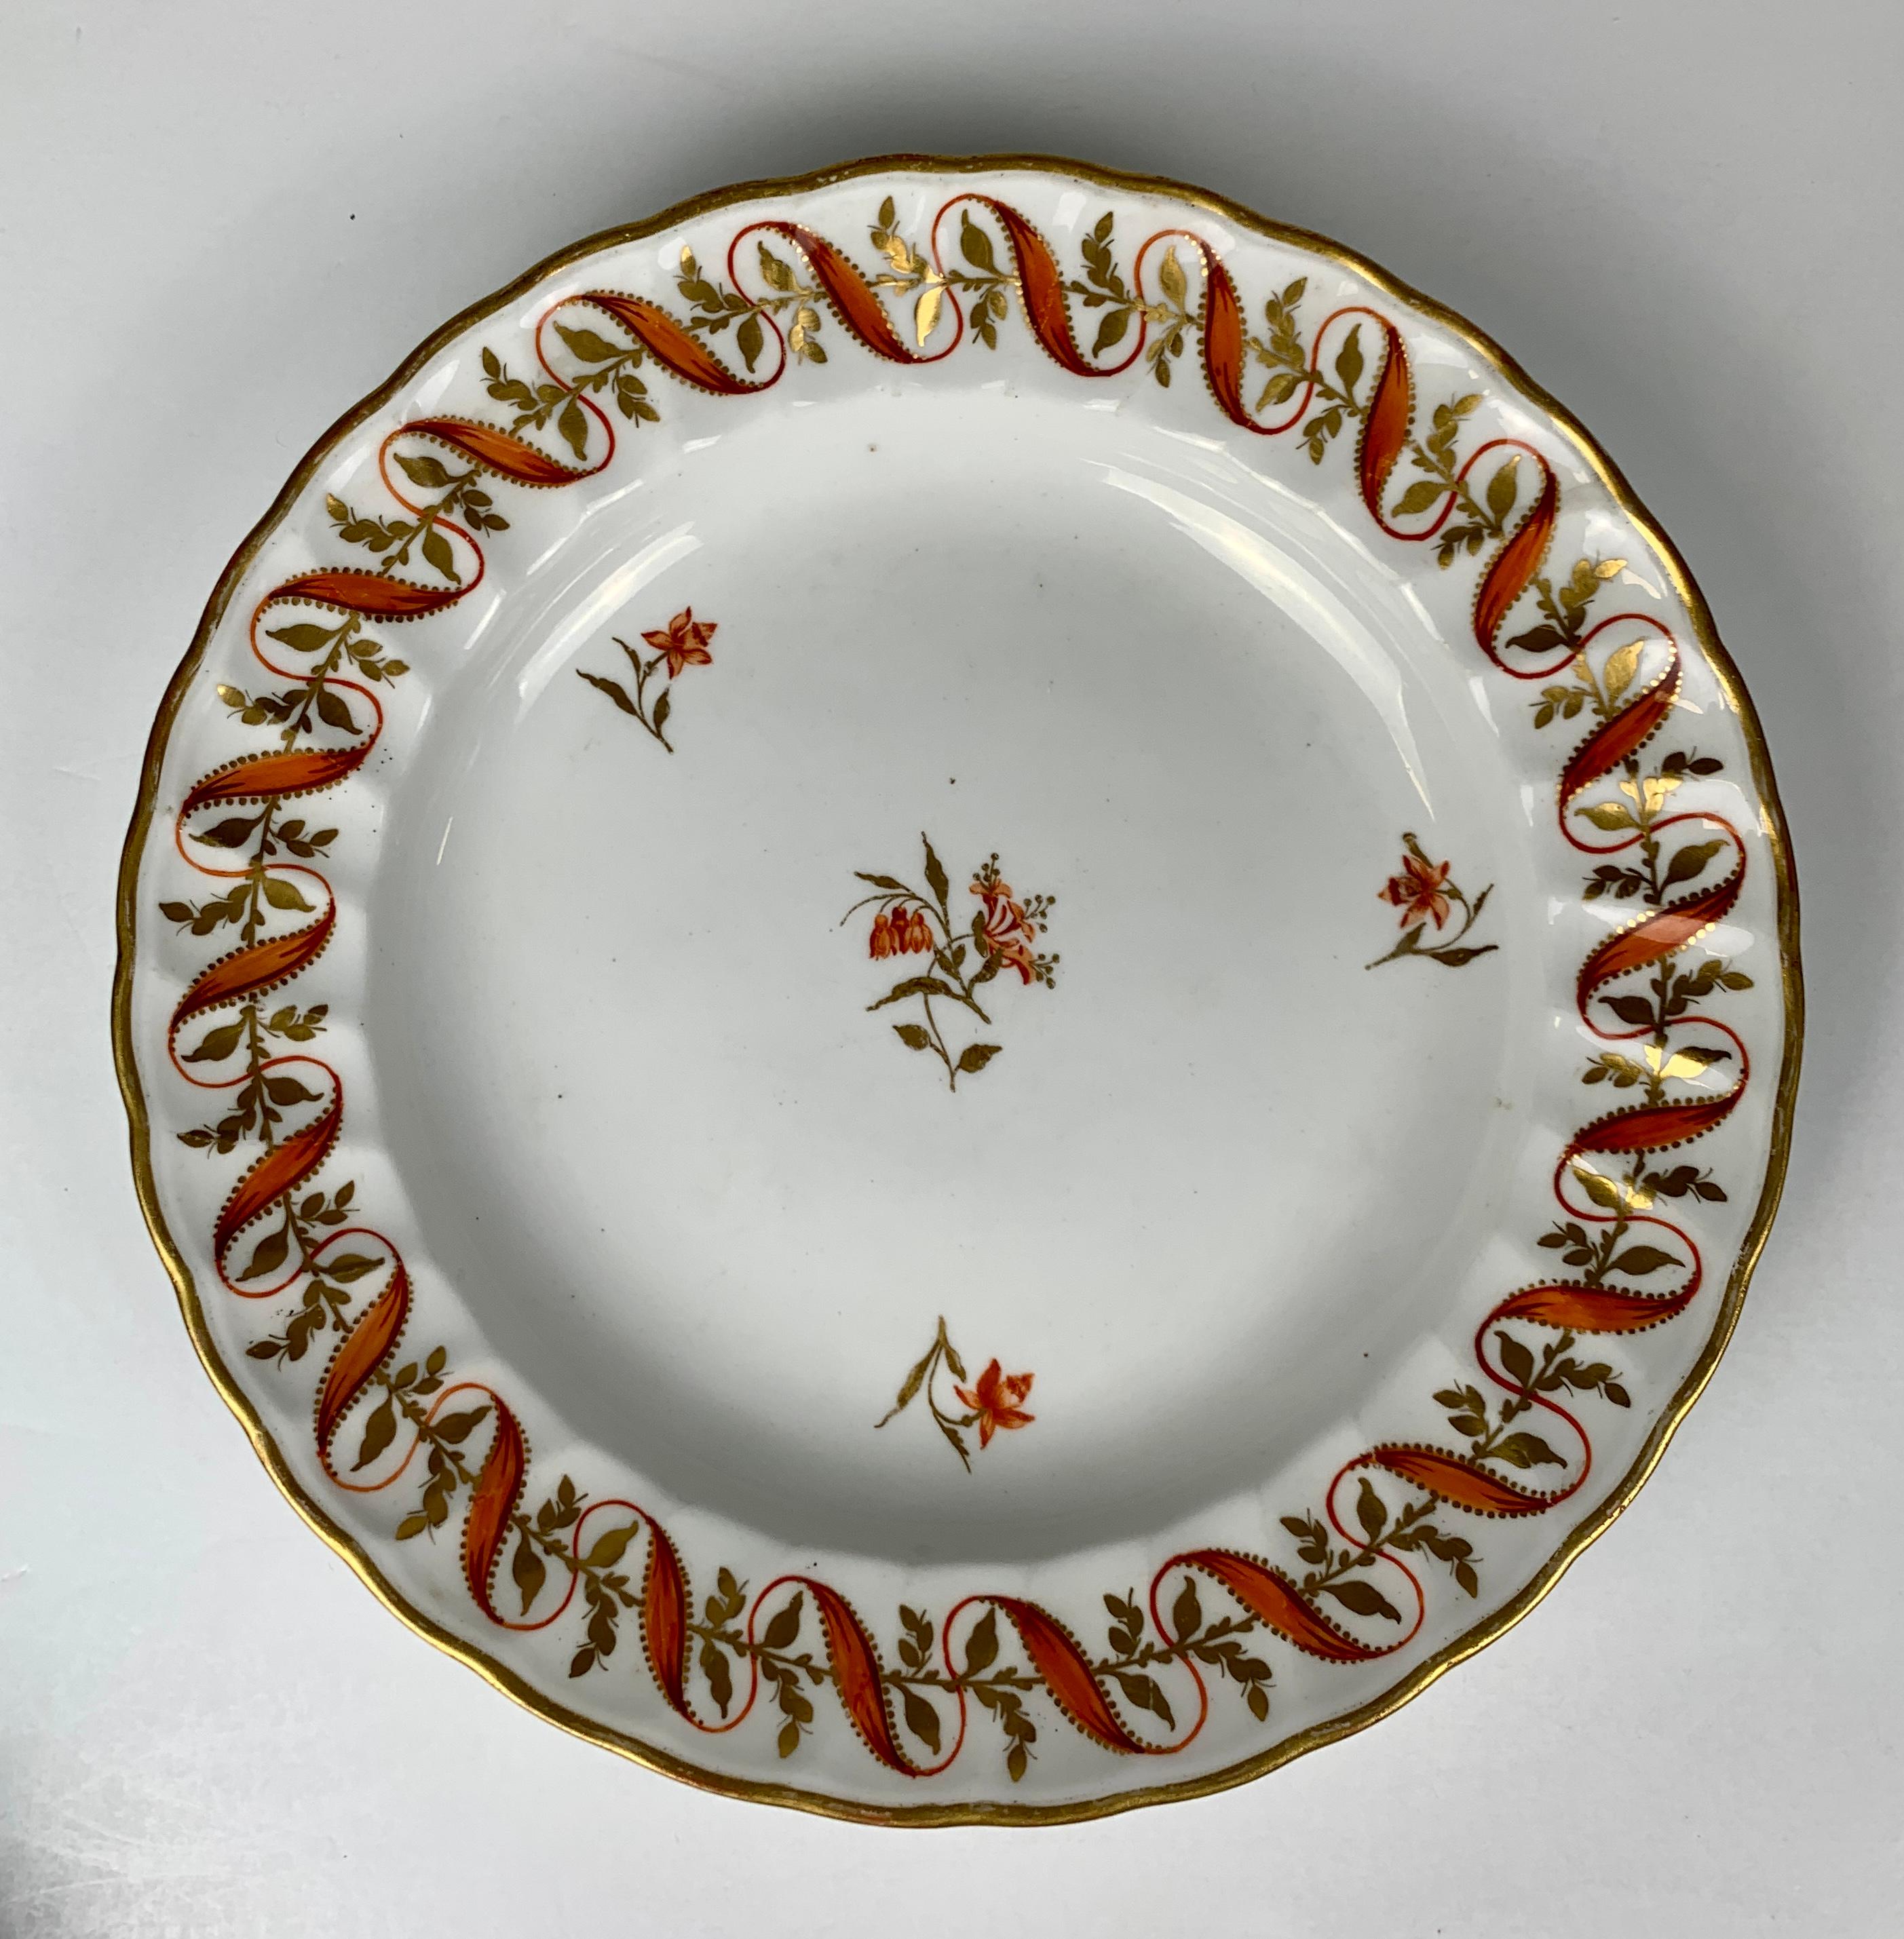 Dieses Set aus vier handbemalten Tellern wurde Ende des 18. Jahrhunderts, etwa um 1790, in Derby in England hergestellt.
Die Umrandung zeigt ein wunderschönes, gewelltes, orangefarbenes Band, das sich öffnet und schließt, während es sich in eine